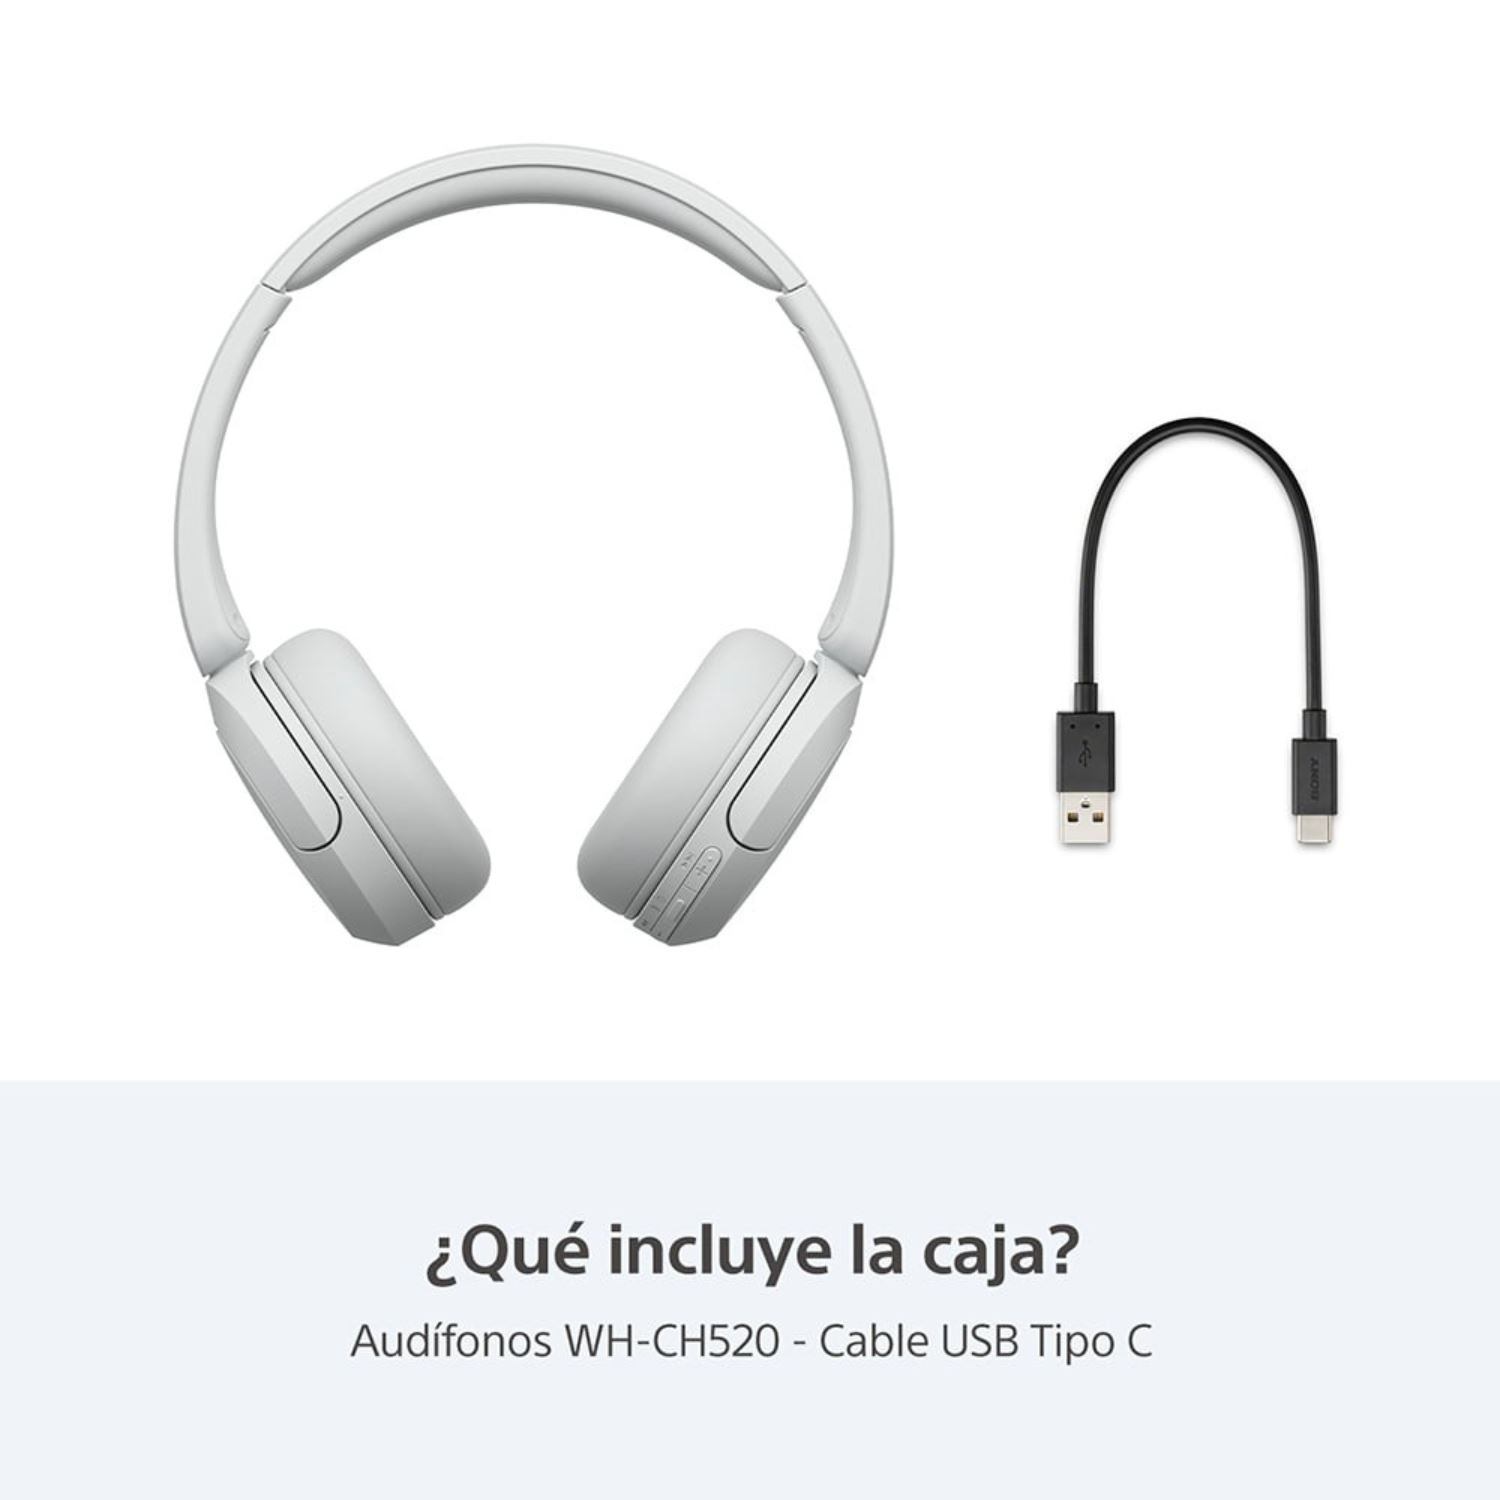 PROXIMAMENTE DISPONIBLE* AUDIFONOS SONY WH-CH520 🎧Estos audífonos